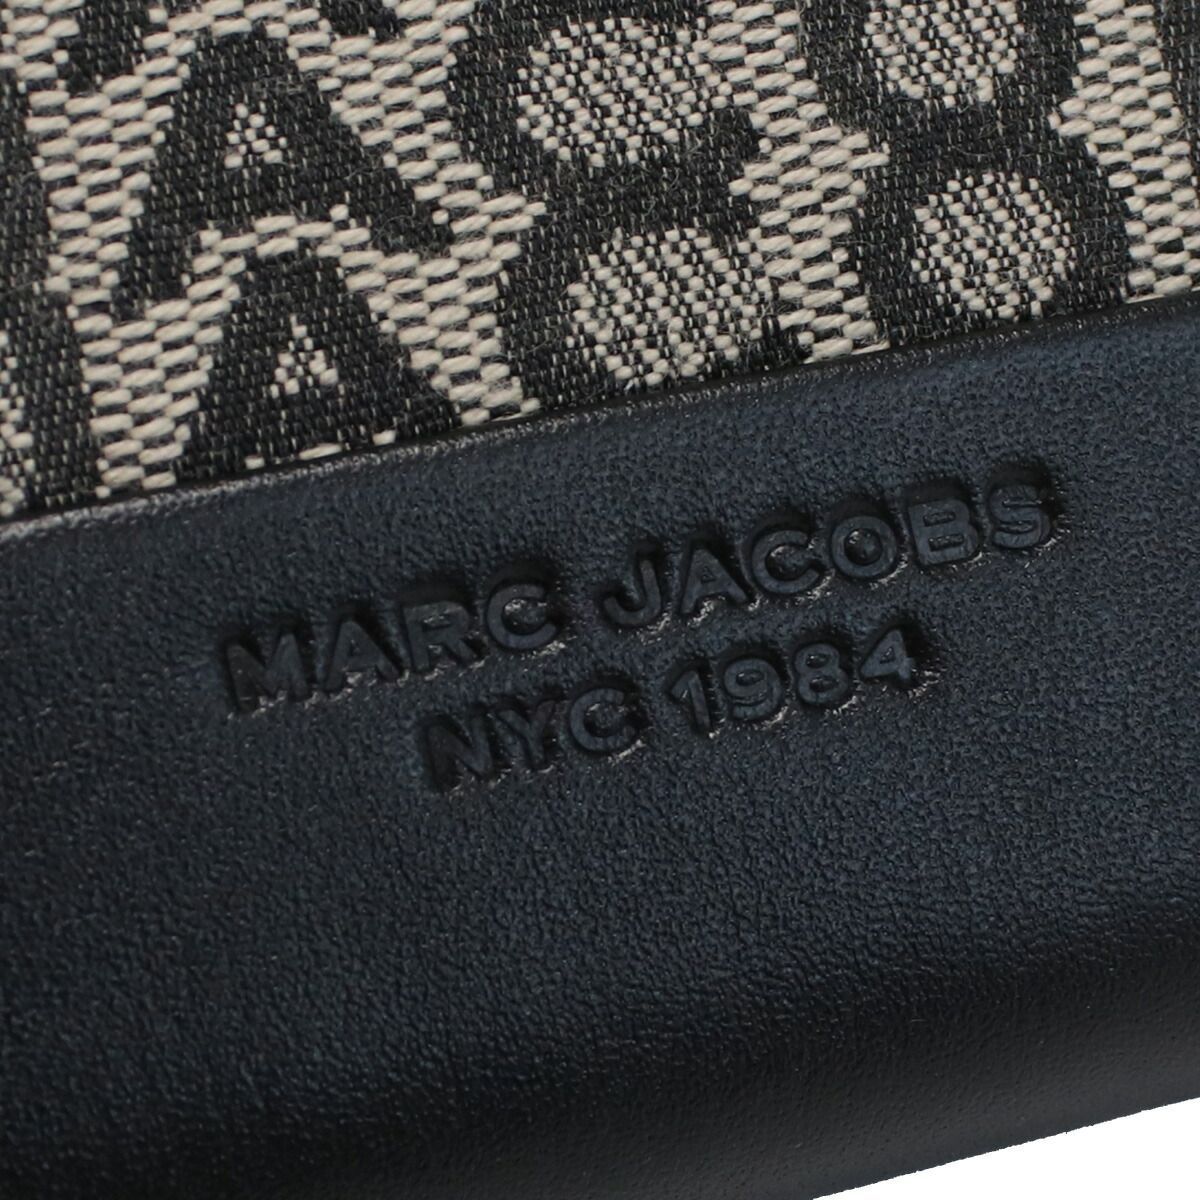 MARC JACOBS マークジェイコブス THE CONTINENTAL WRISTLET S180M12FA22 長財布ラウンドファスナー BEIGE MULTI ベージュ系 ブラック レディース